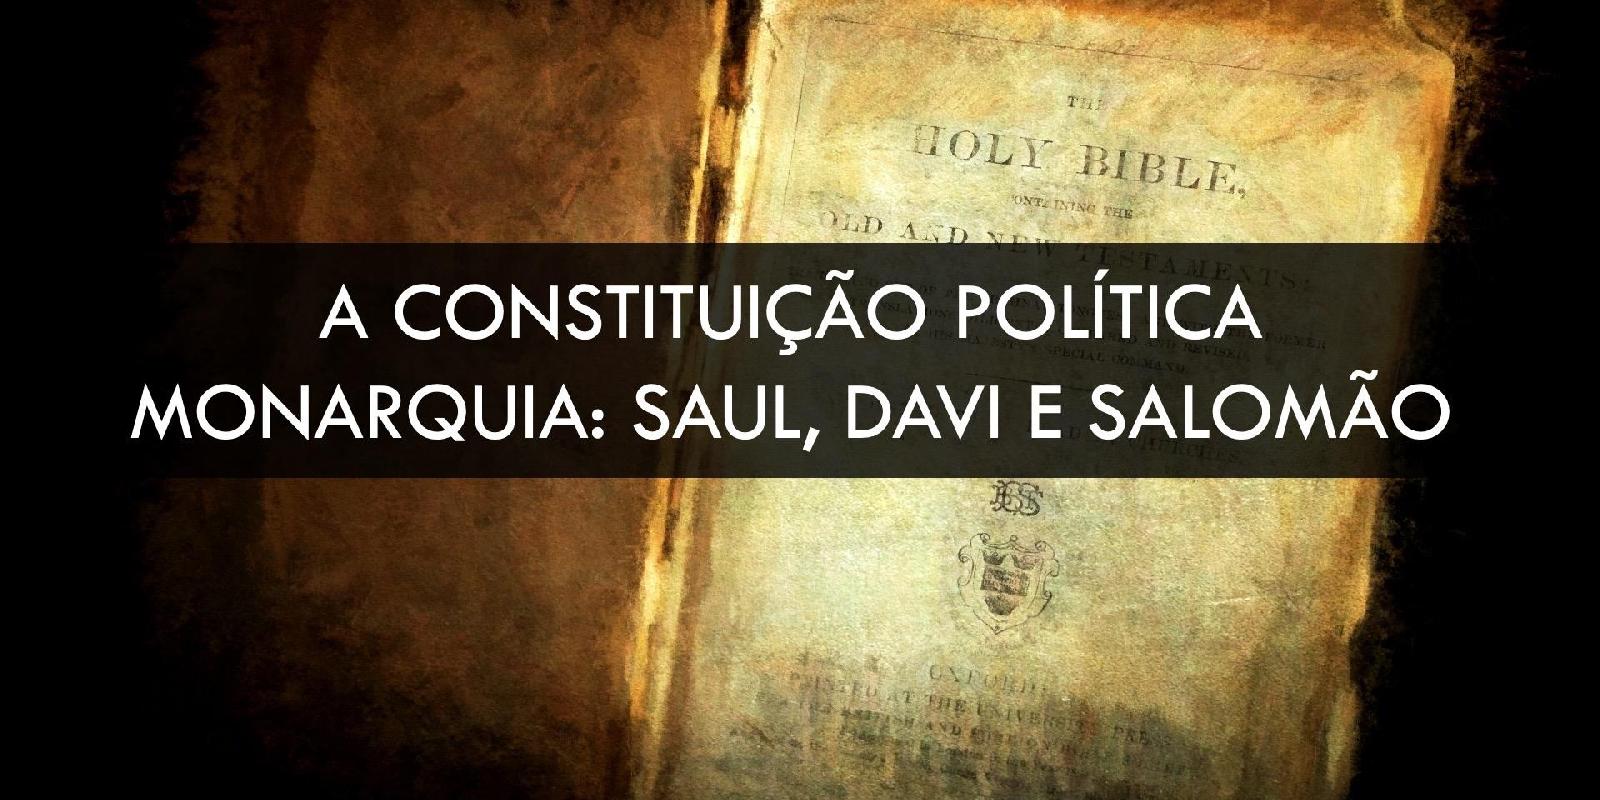 Constituição Política: A Monarquia - Saul, Davi e Salomão